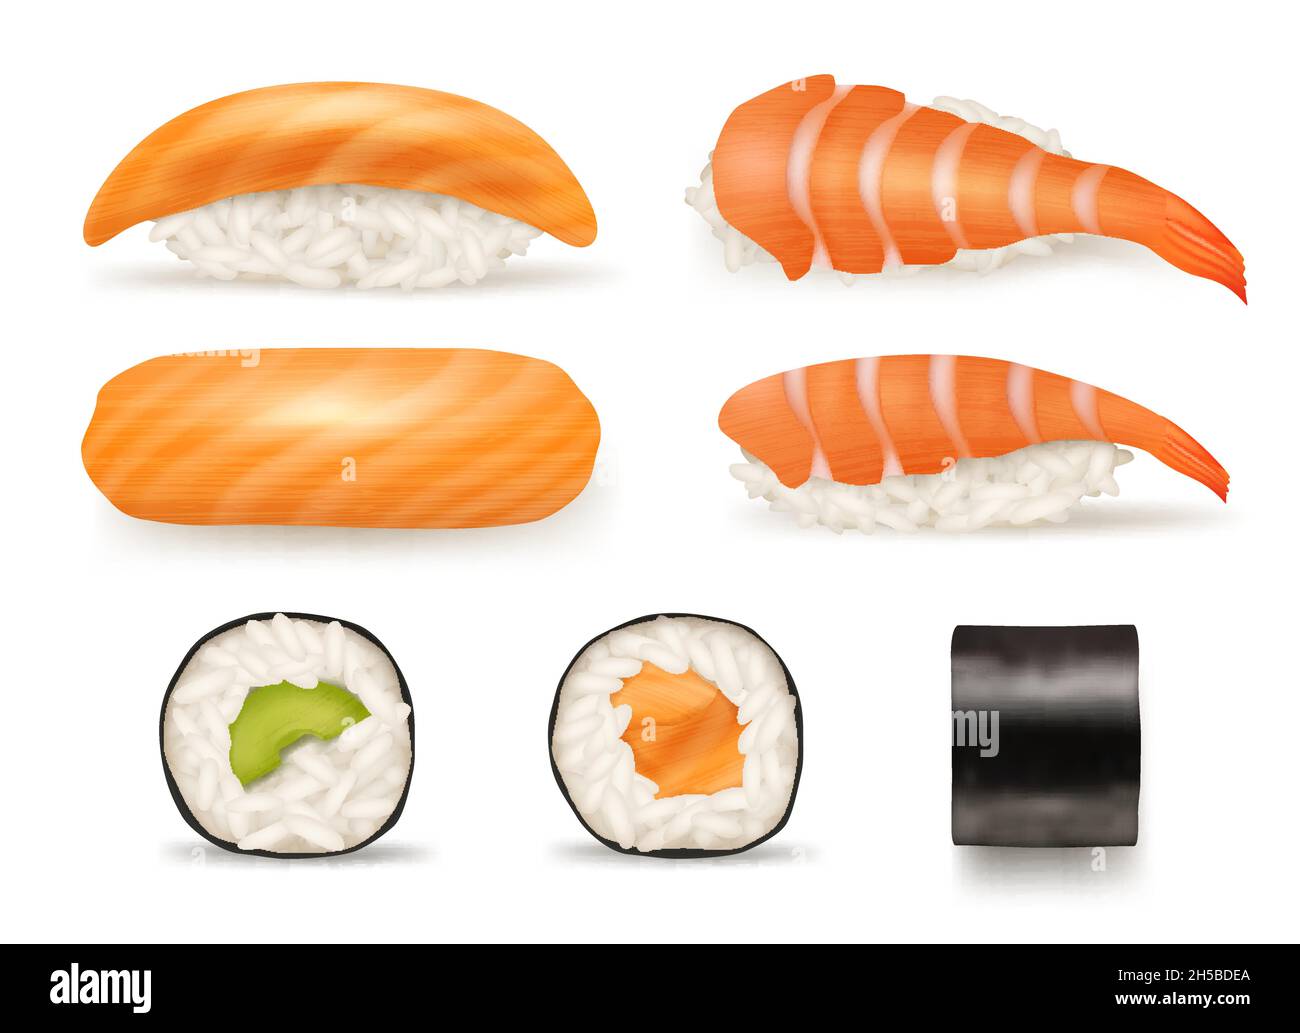 Sushi realistisch. Verschiedene japanische Lebensmittel aus Fisch Sushi Algen Rollen leckere Produkte aus asiatischen Cousine anständige Vektor-Illustration Sammlung Stock Vektor